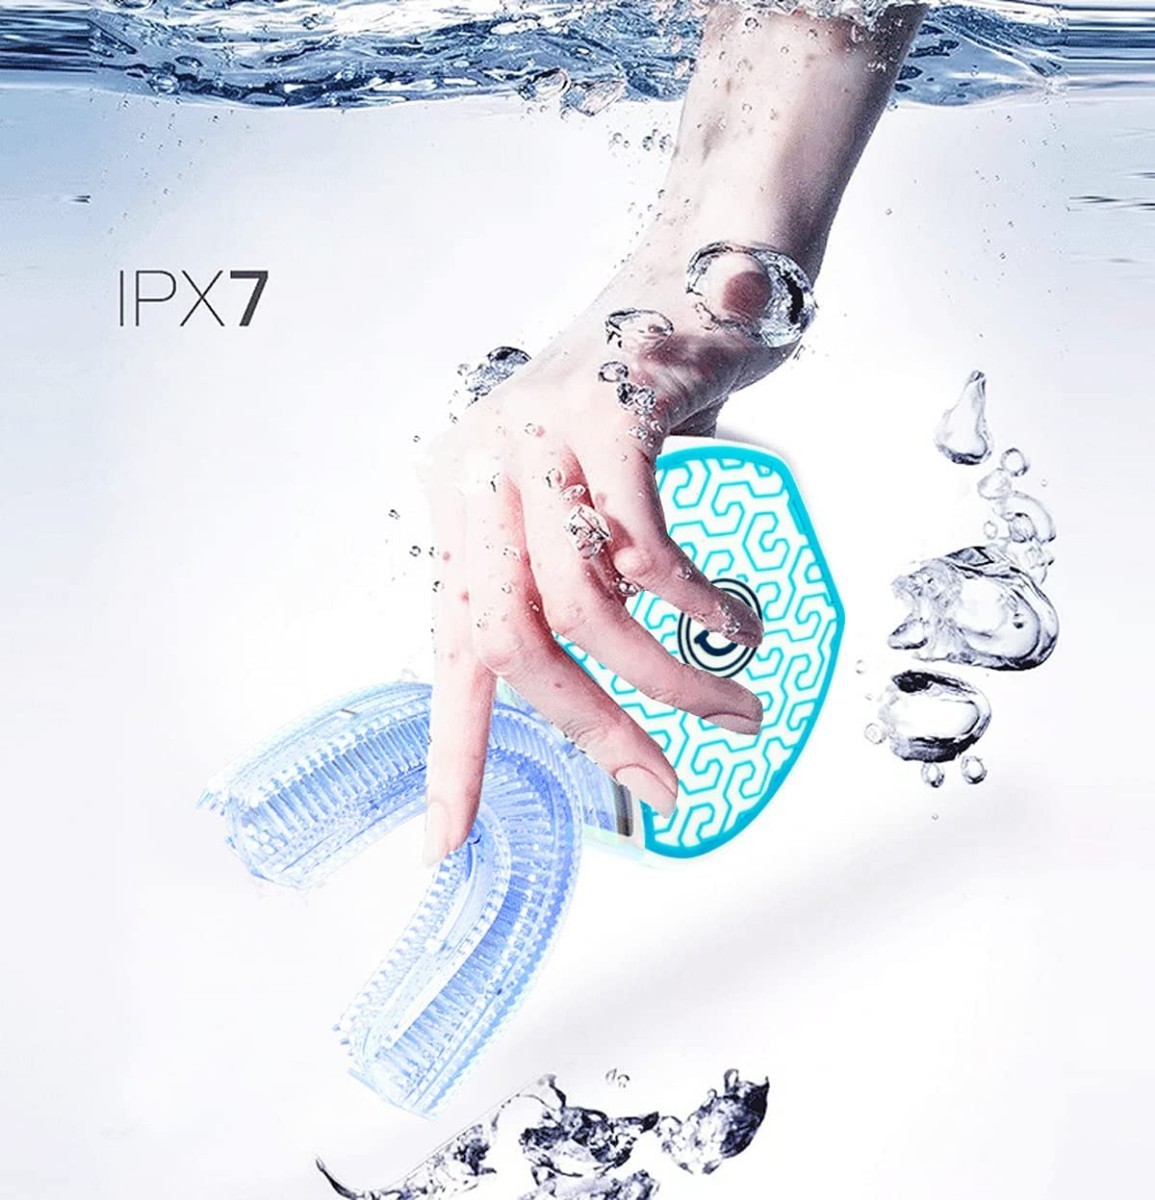 電動歯ブラシ 音波振動歯 ブラシ - IPX7防水